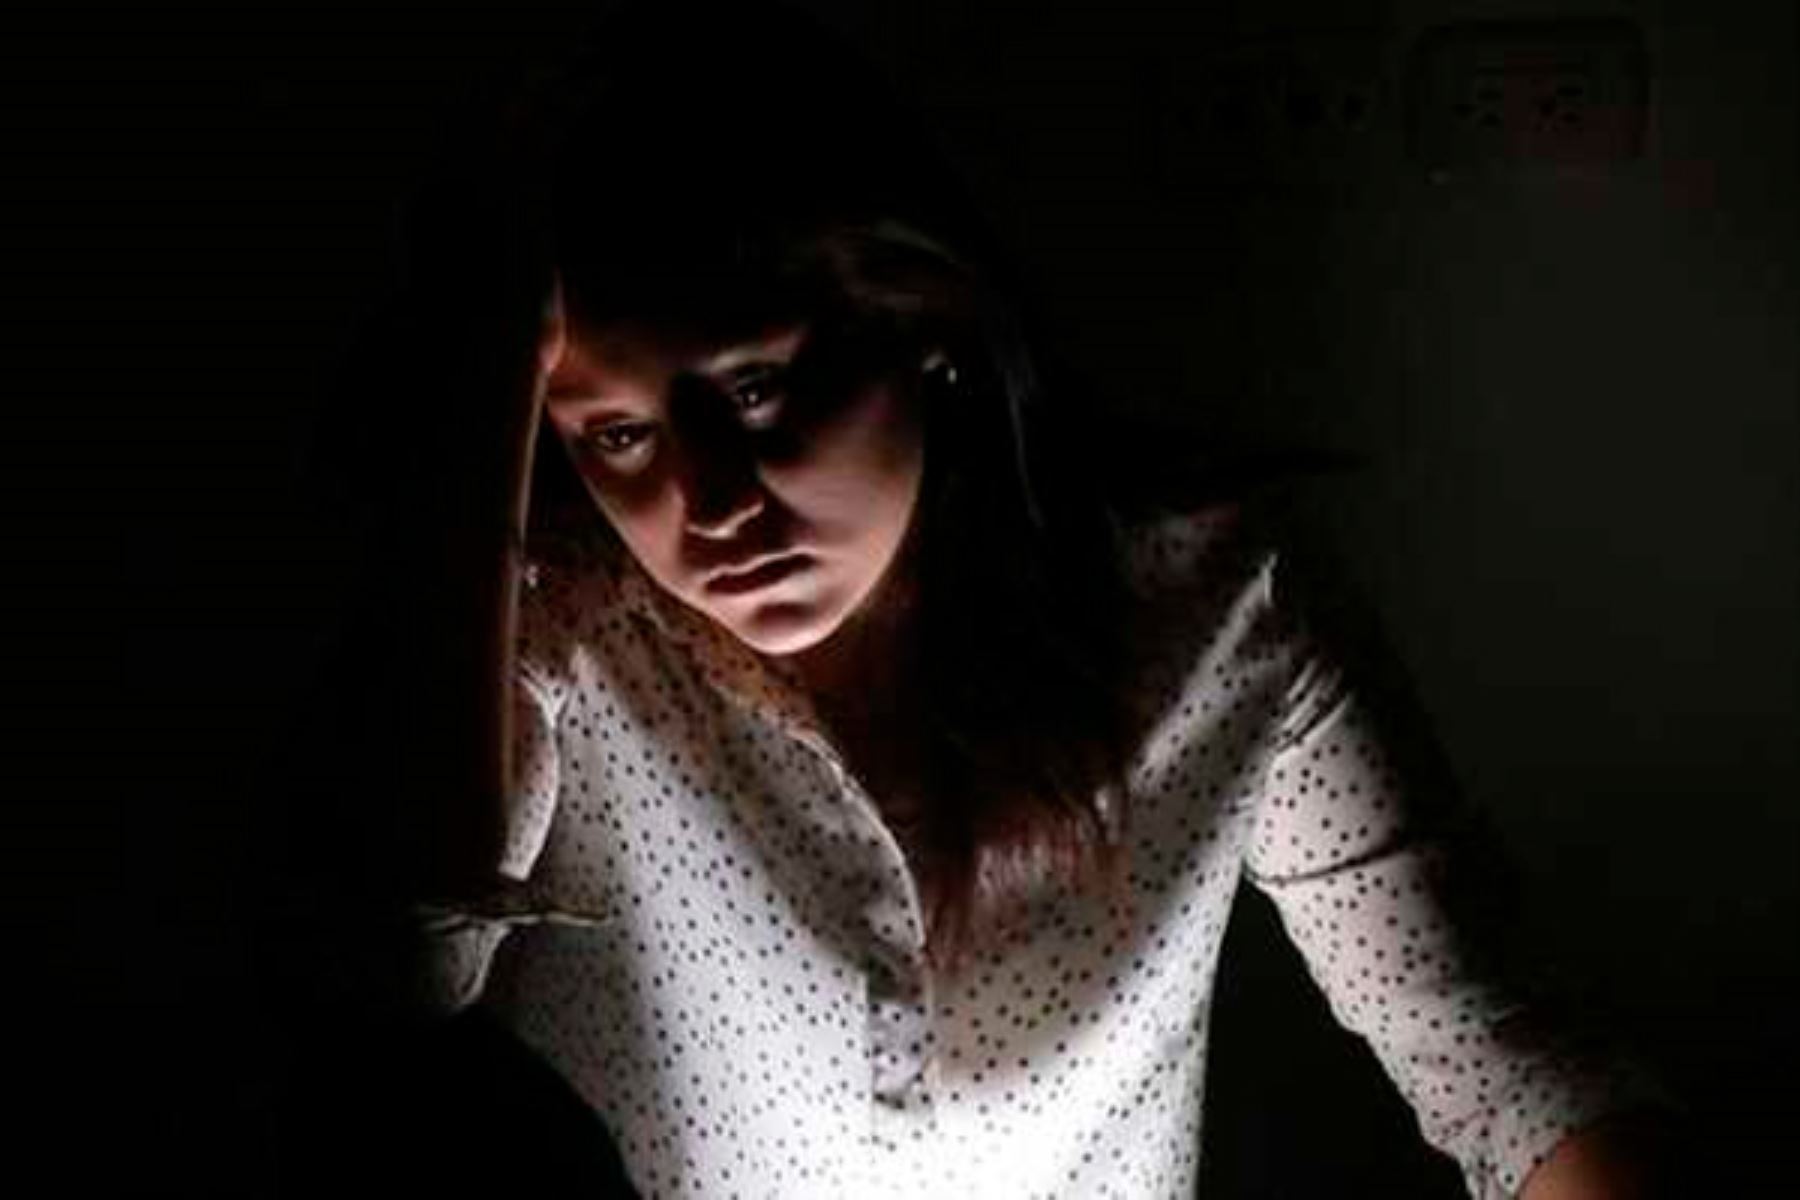 Riesgo suicida y trastornos del sueño se incrementaron, mientras que la calidad de vida disminuyó, según estudio del Instituto Nacional de Salud Mental. Foto: ANDINA/Minsa